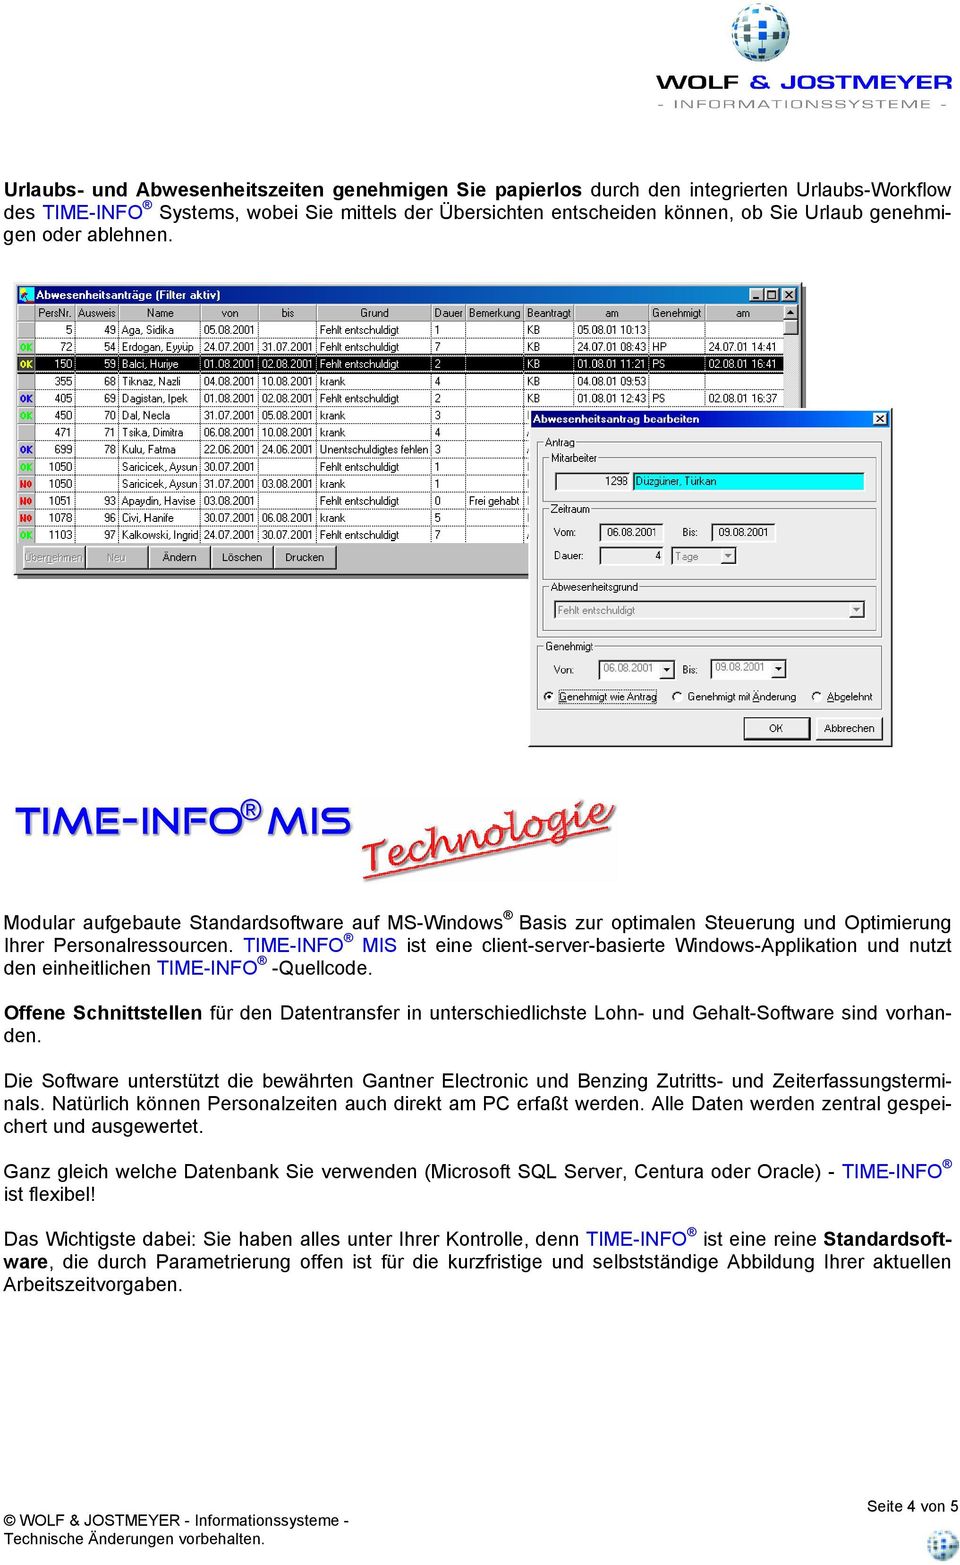 TIME-INFO MIS ist eine client-server-basierte Windows-Applikation und nutzt den einheitlichen TIME-INFO -Quellcode.